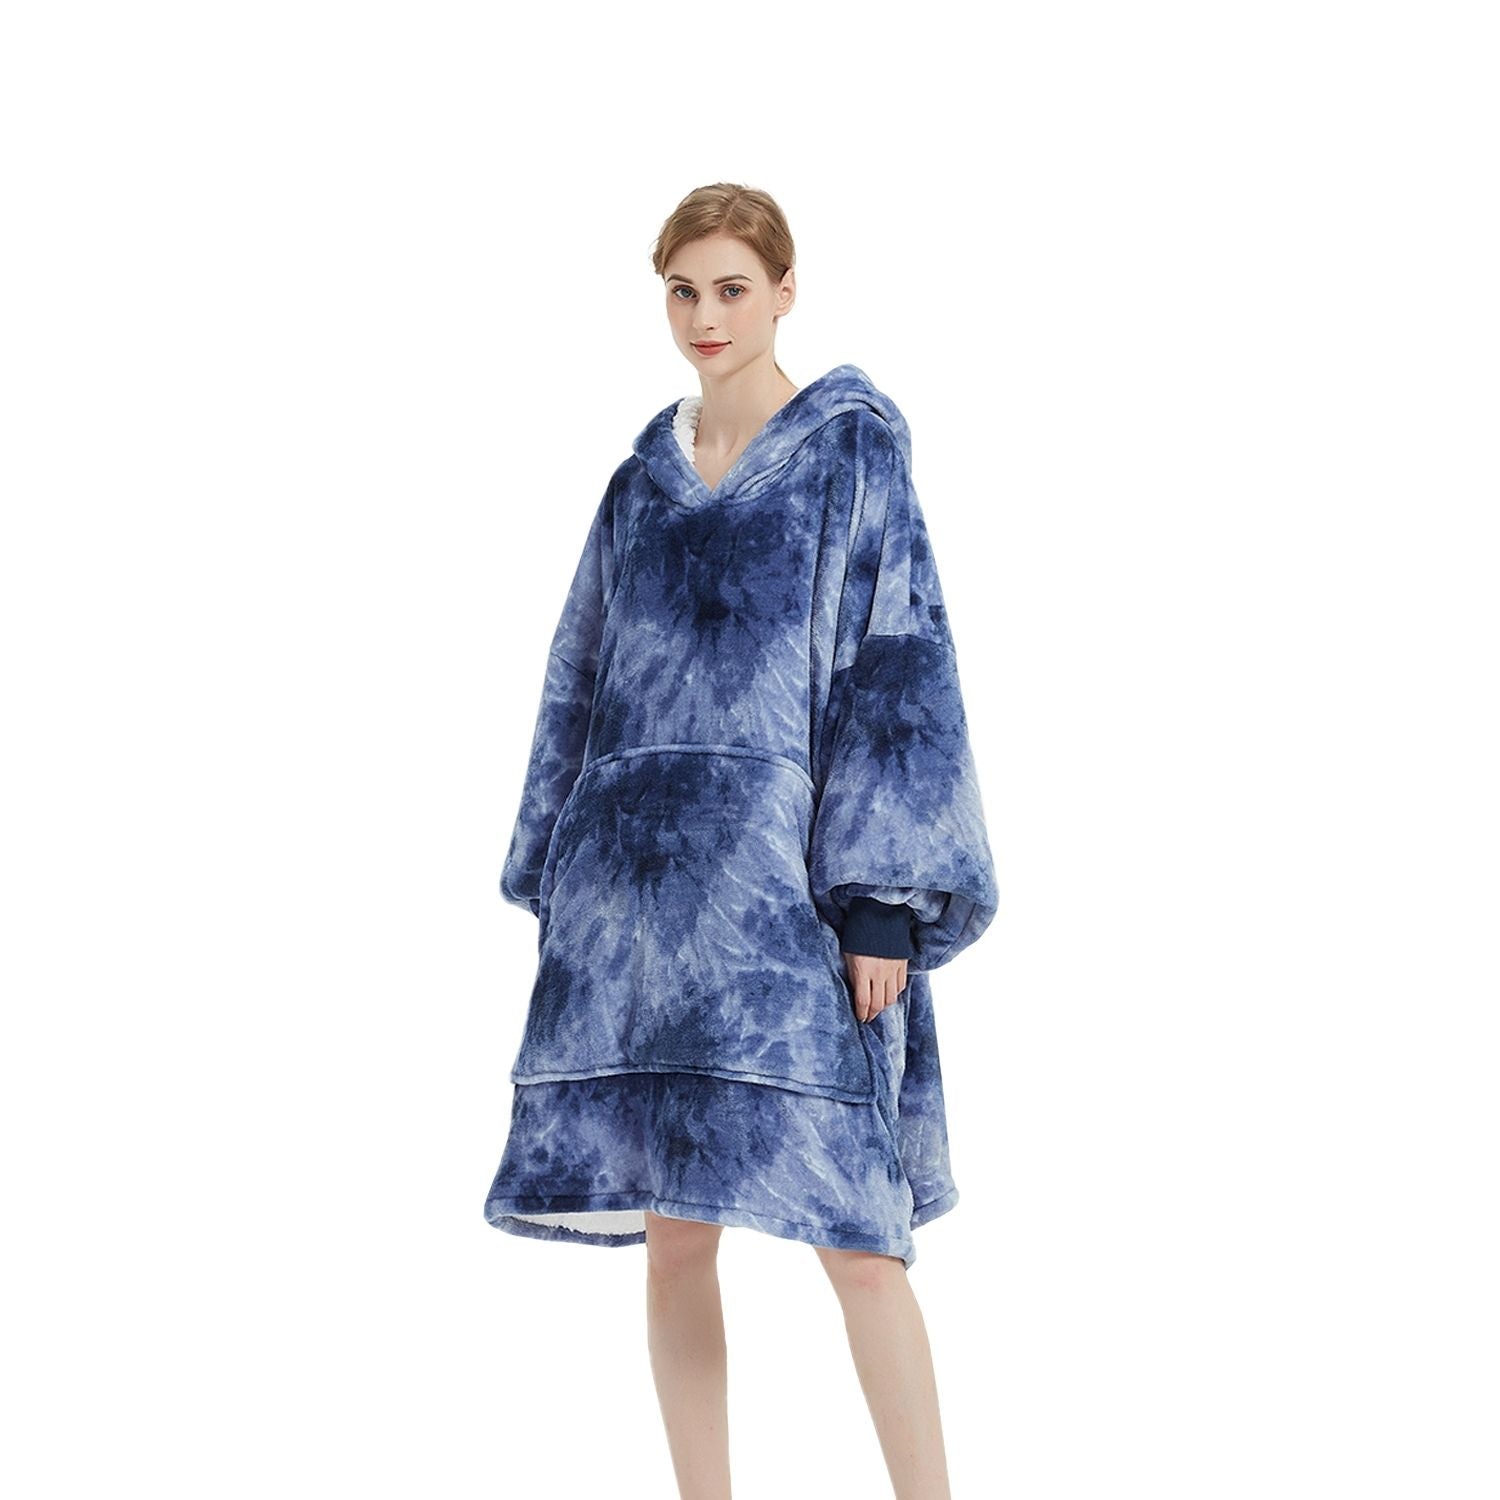 GOMINIMO Hoodie Blanket Adult Tie-Dyed Blue